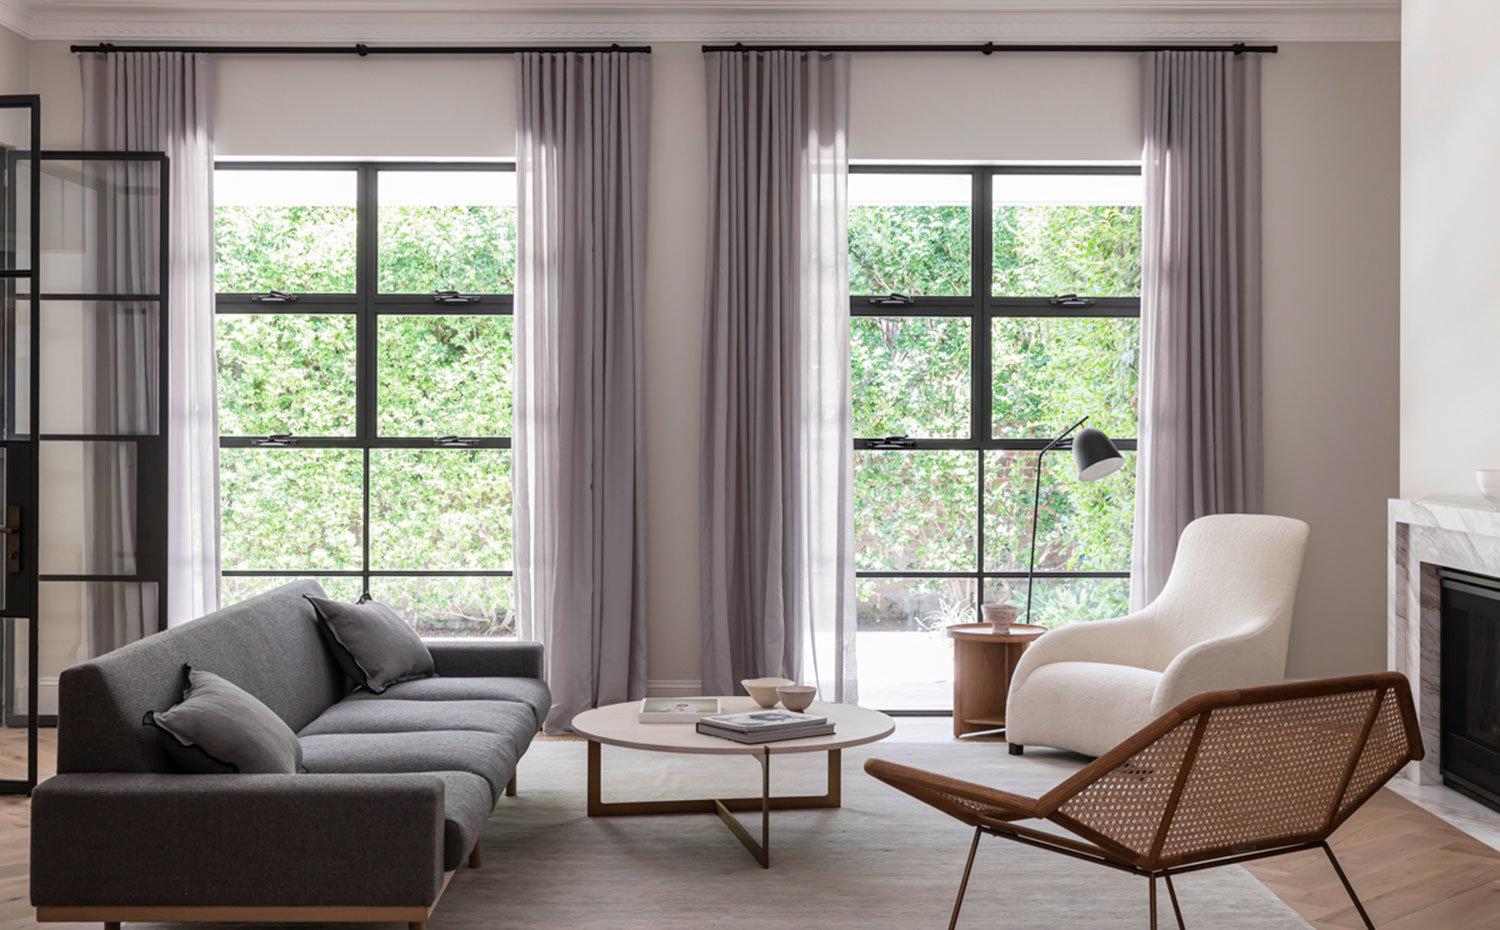 Salón con amplios ventanales provistos de cortinas grises, butaca cruda, sofá ris y asiento con estructura perforada, mesa de centro circular de madera